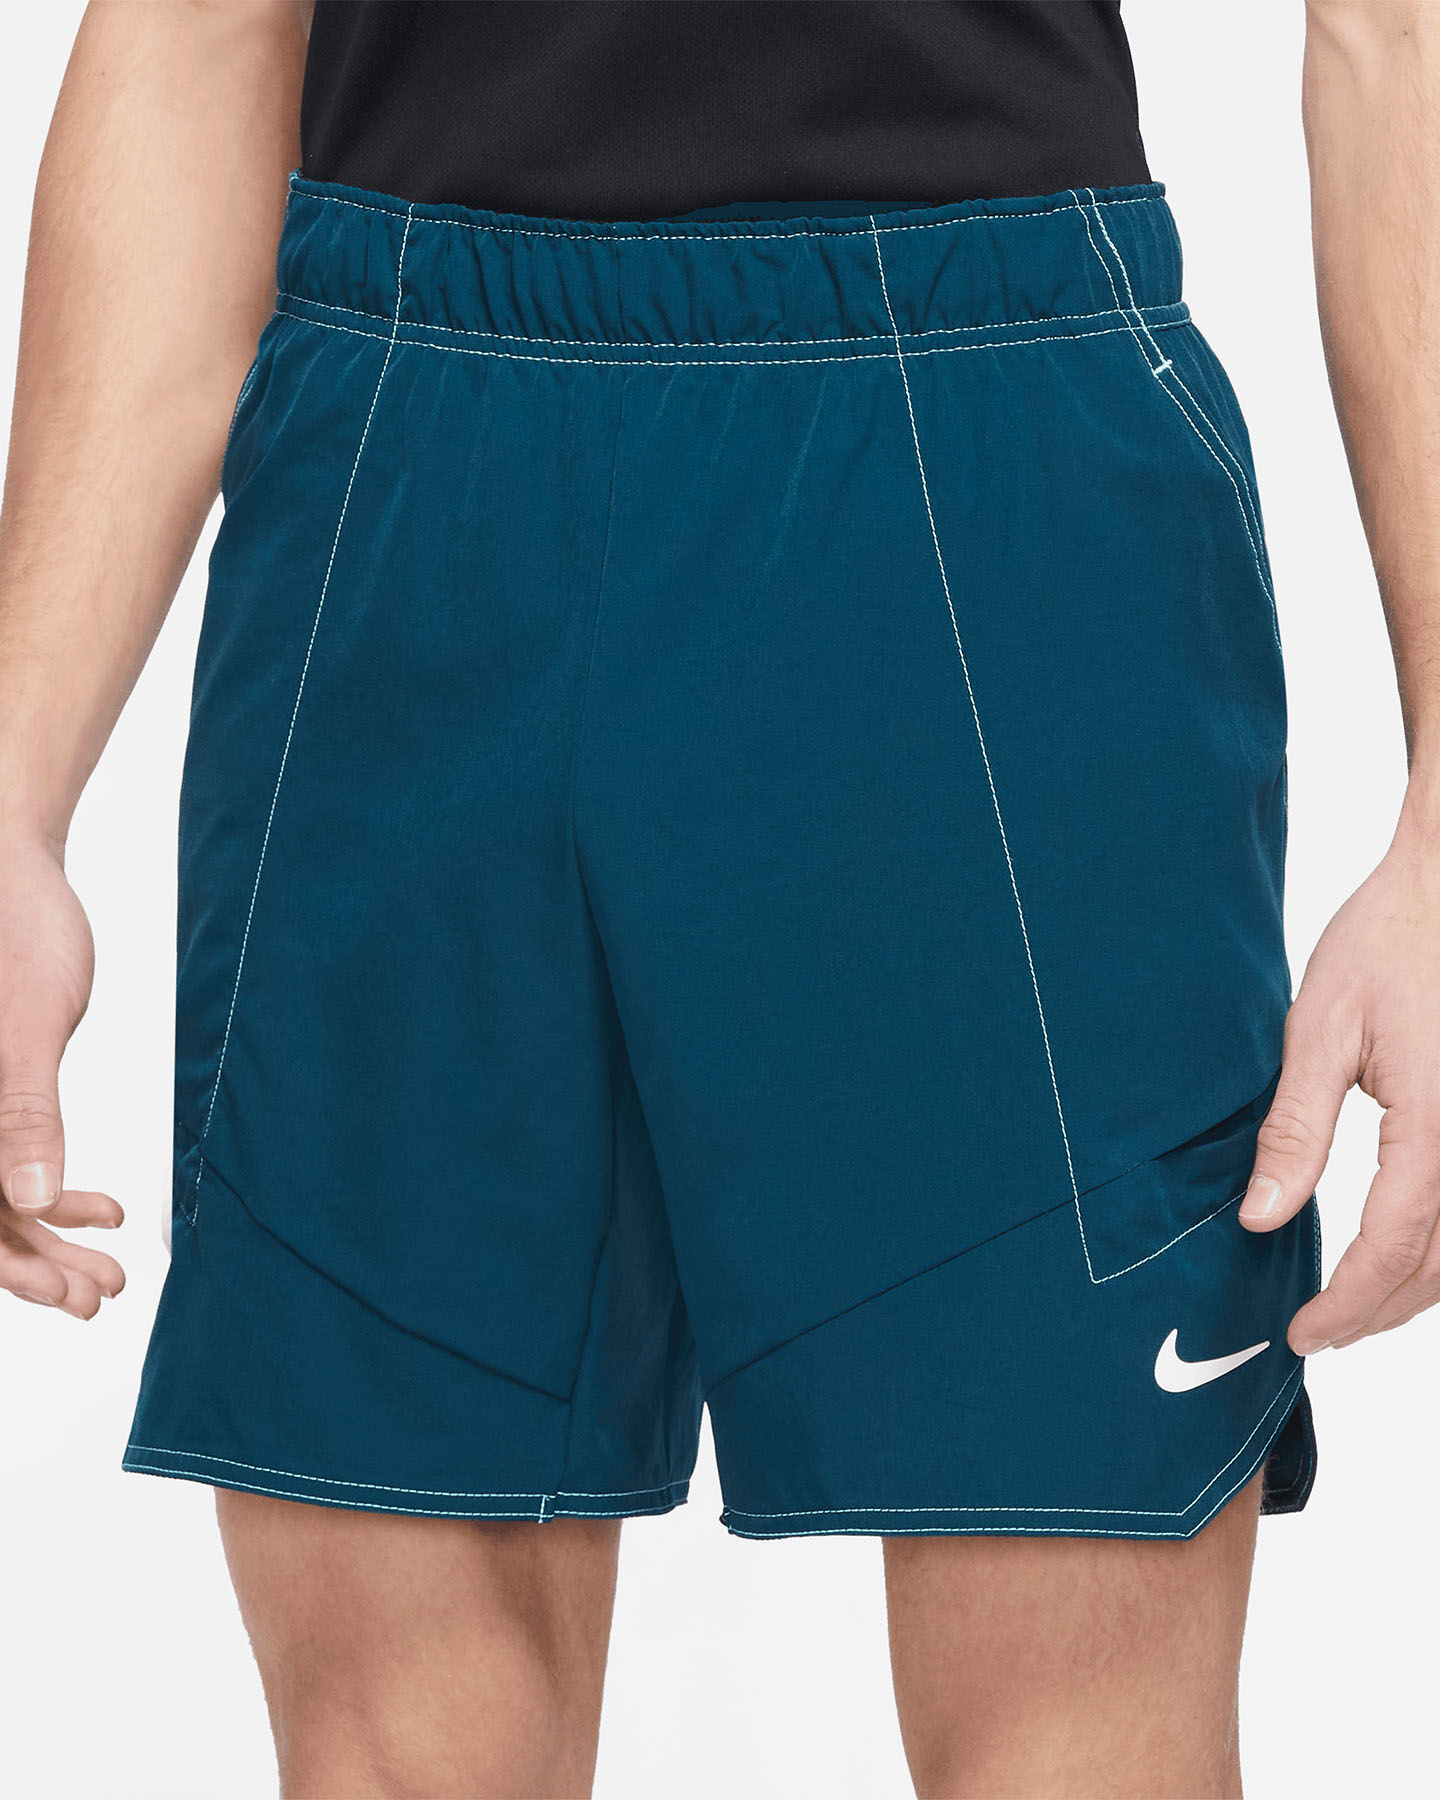  Pantaloncini tennis NIKE DRI-FIT 7" ADVANTAGE M S5492249|460|S scatto 0